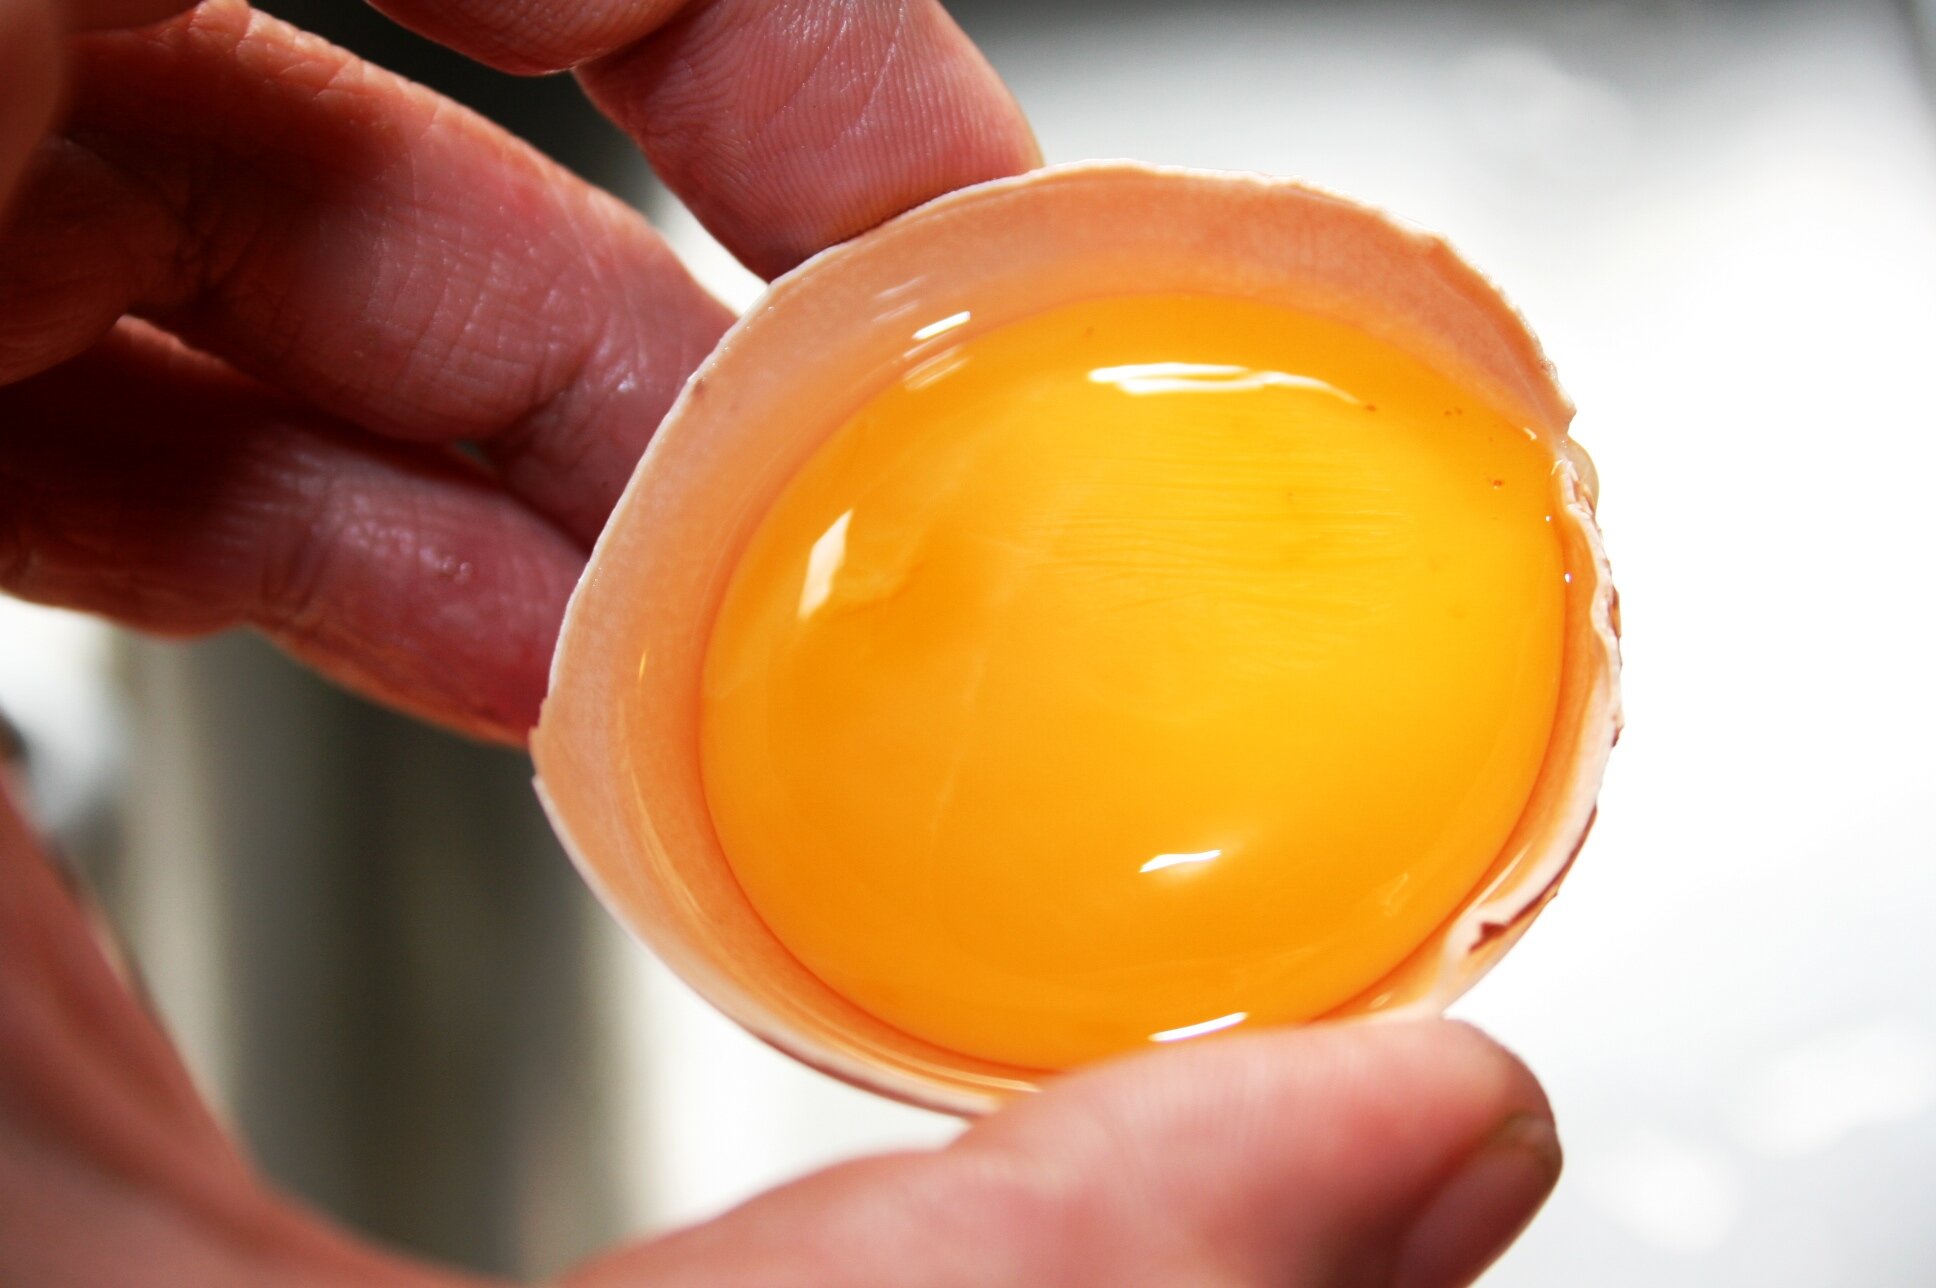 Lòng đỏ trứng chứa protein cao, GI thấp có lợi cho người đường huyết cao